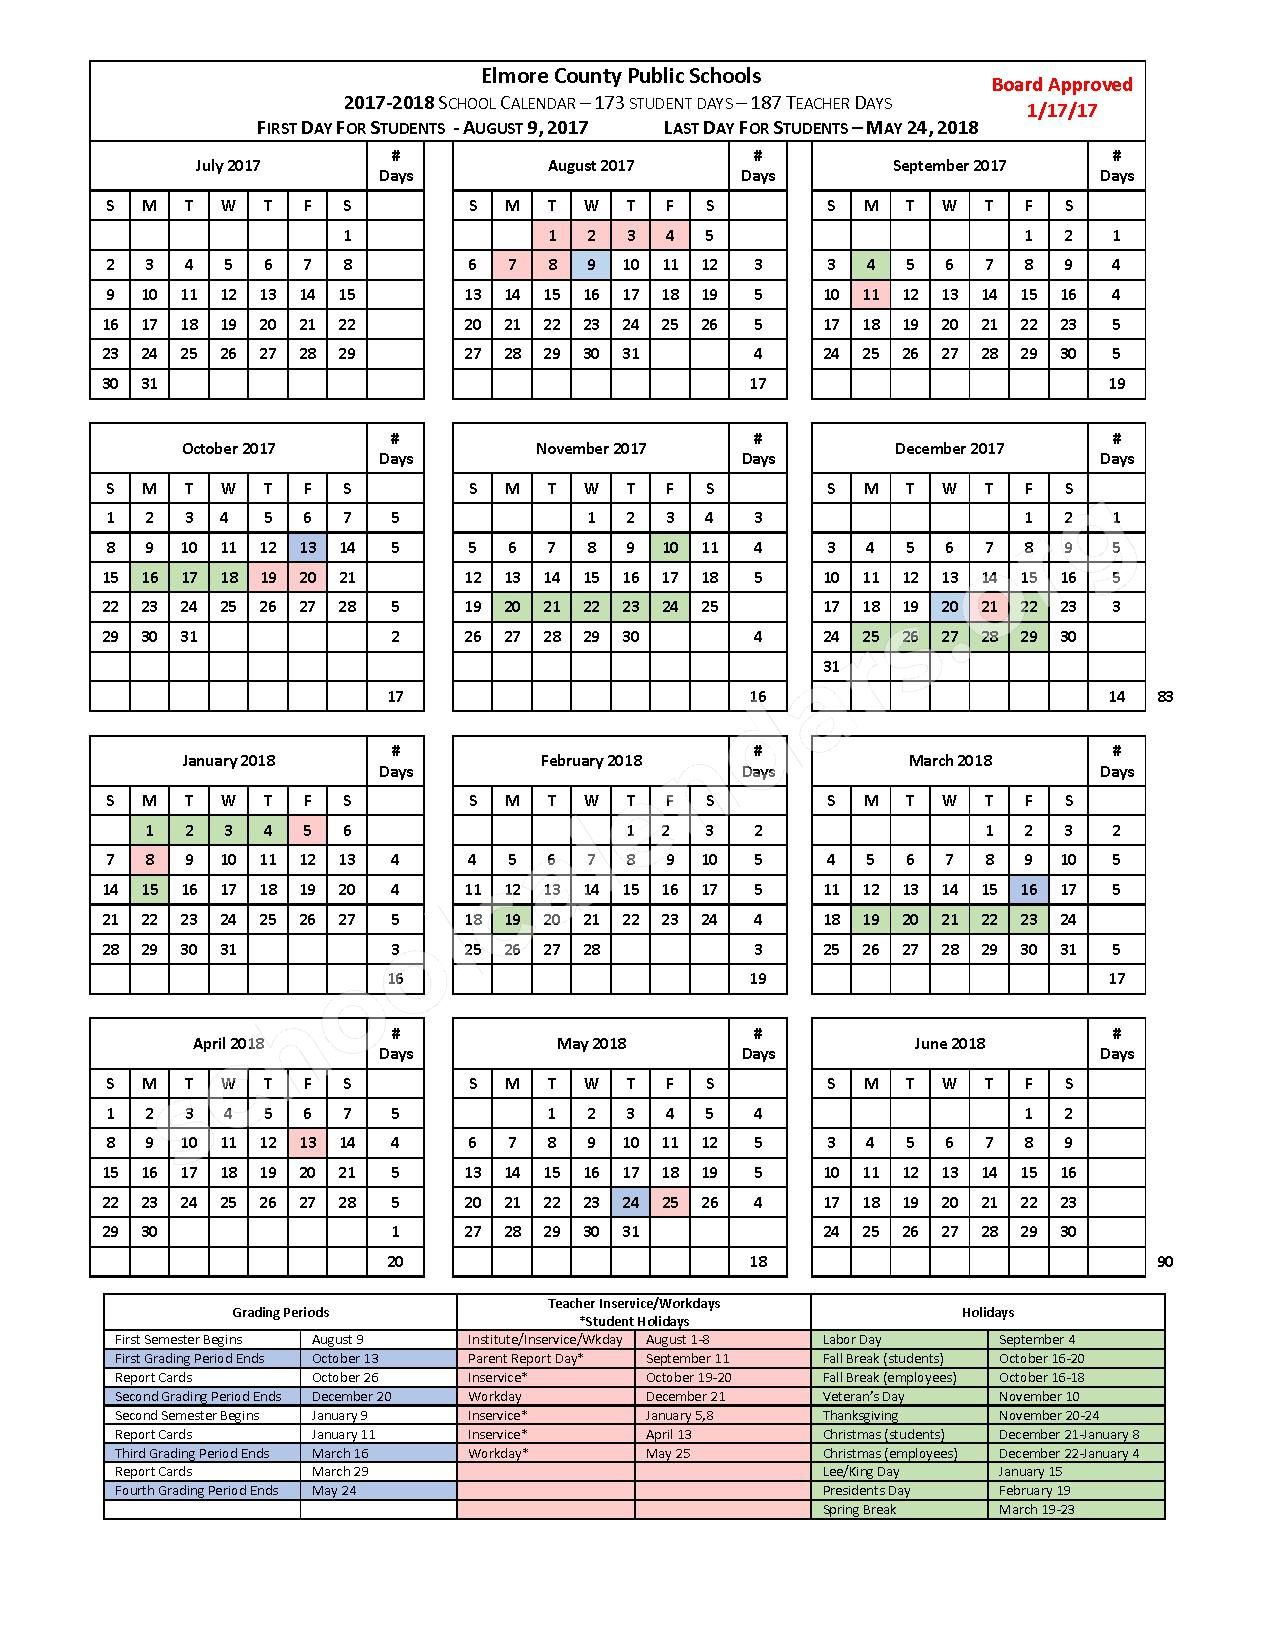 Elmore County Schools Calendars Wetumpka AL